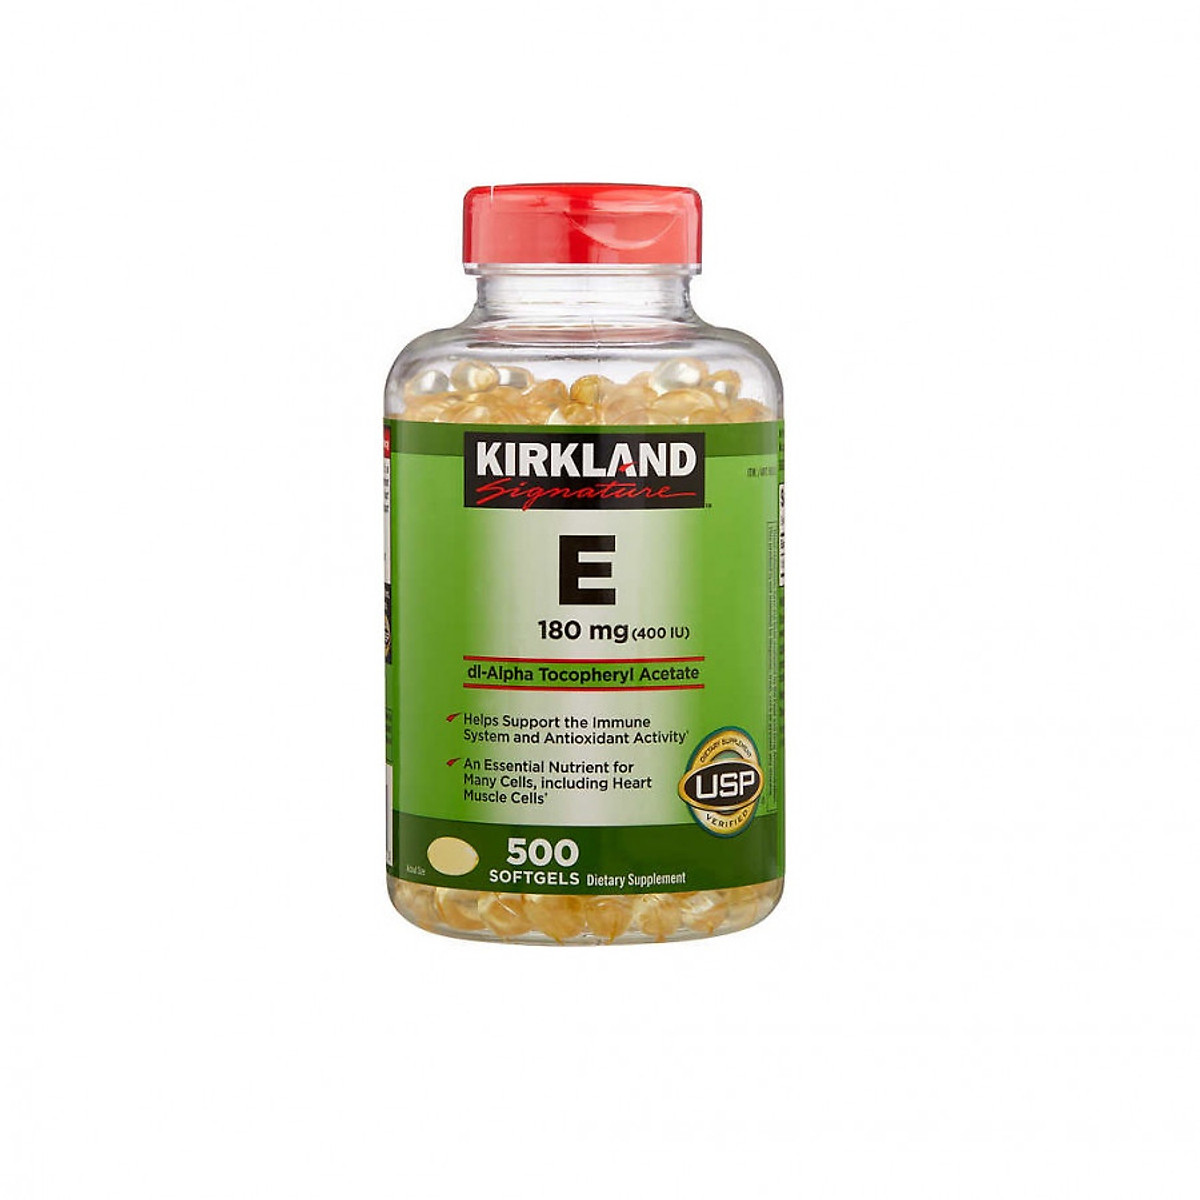 Viên uống bổ sung Vitamin E Kirkland E Của Mỹ 180mg (400 IU)